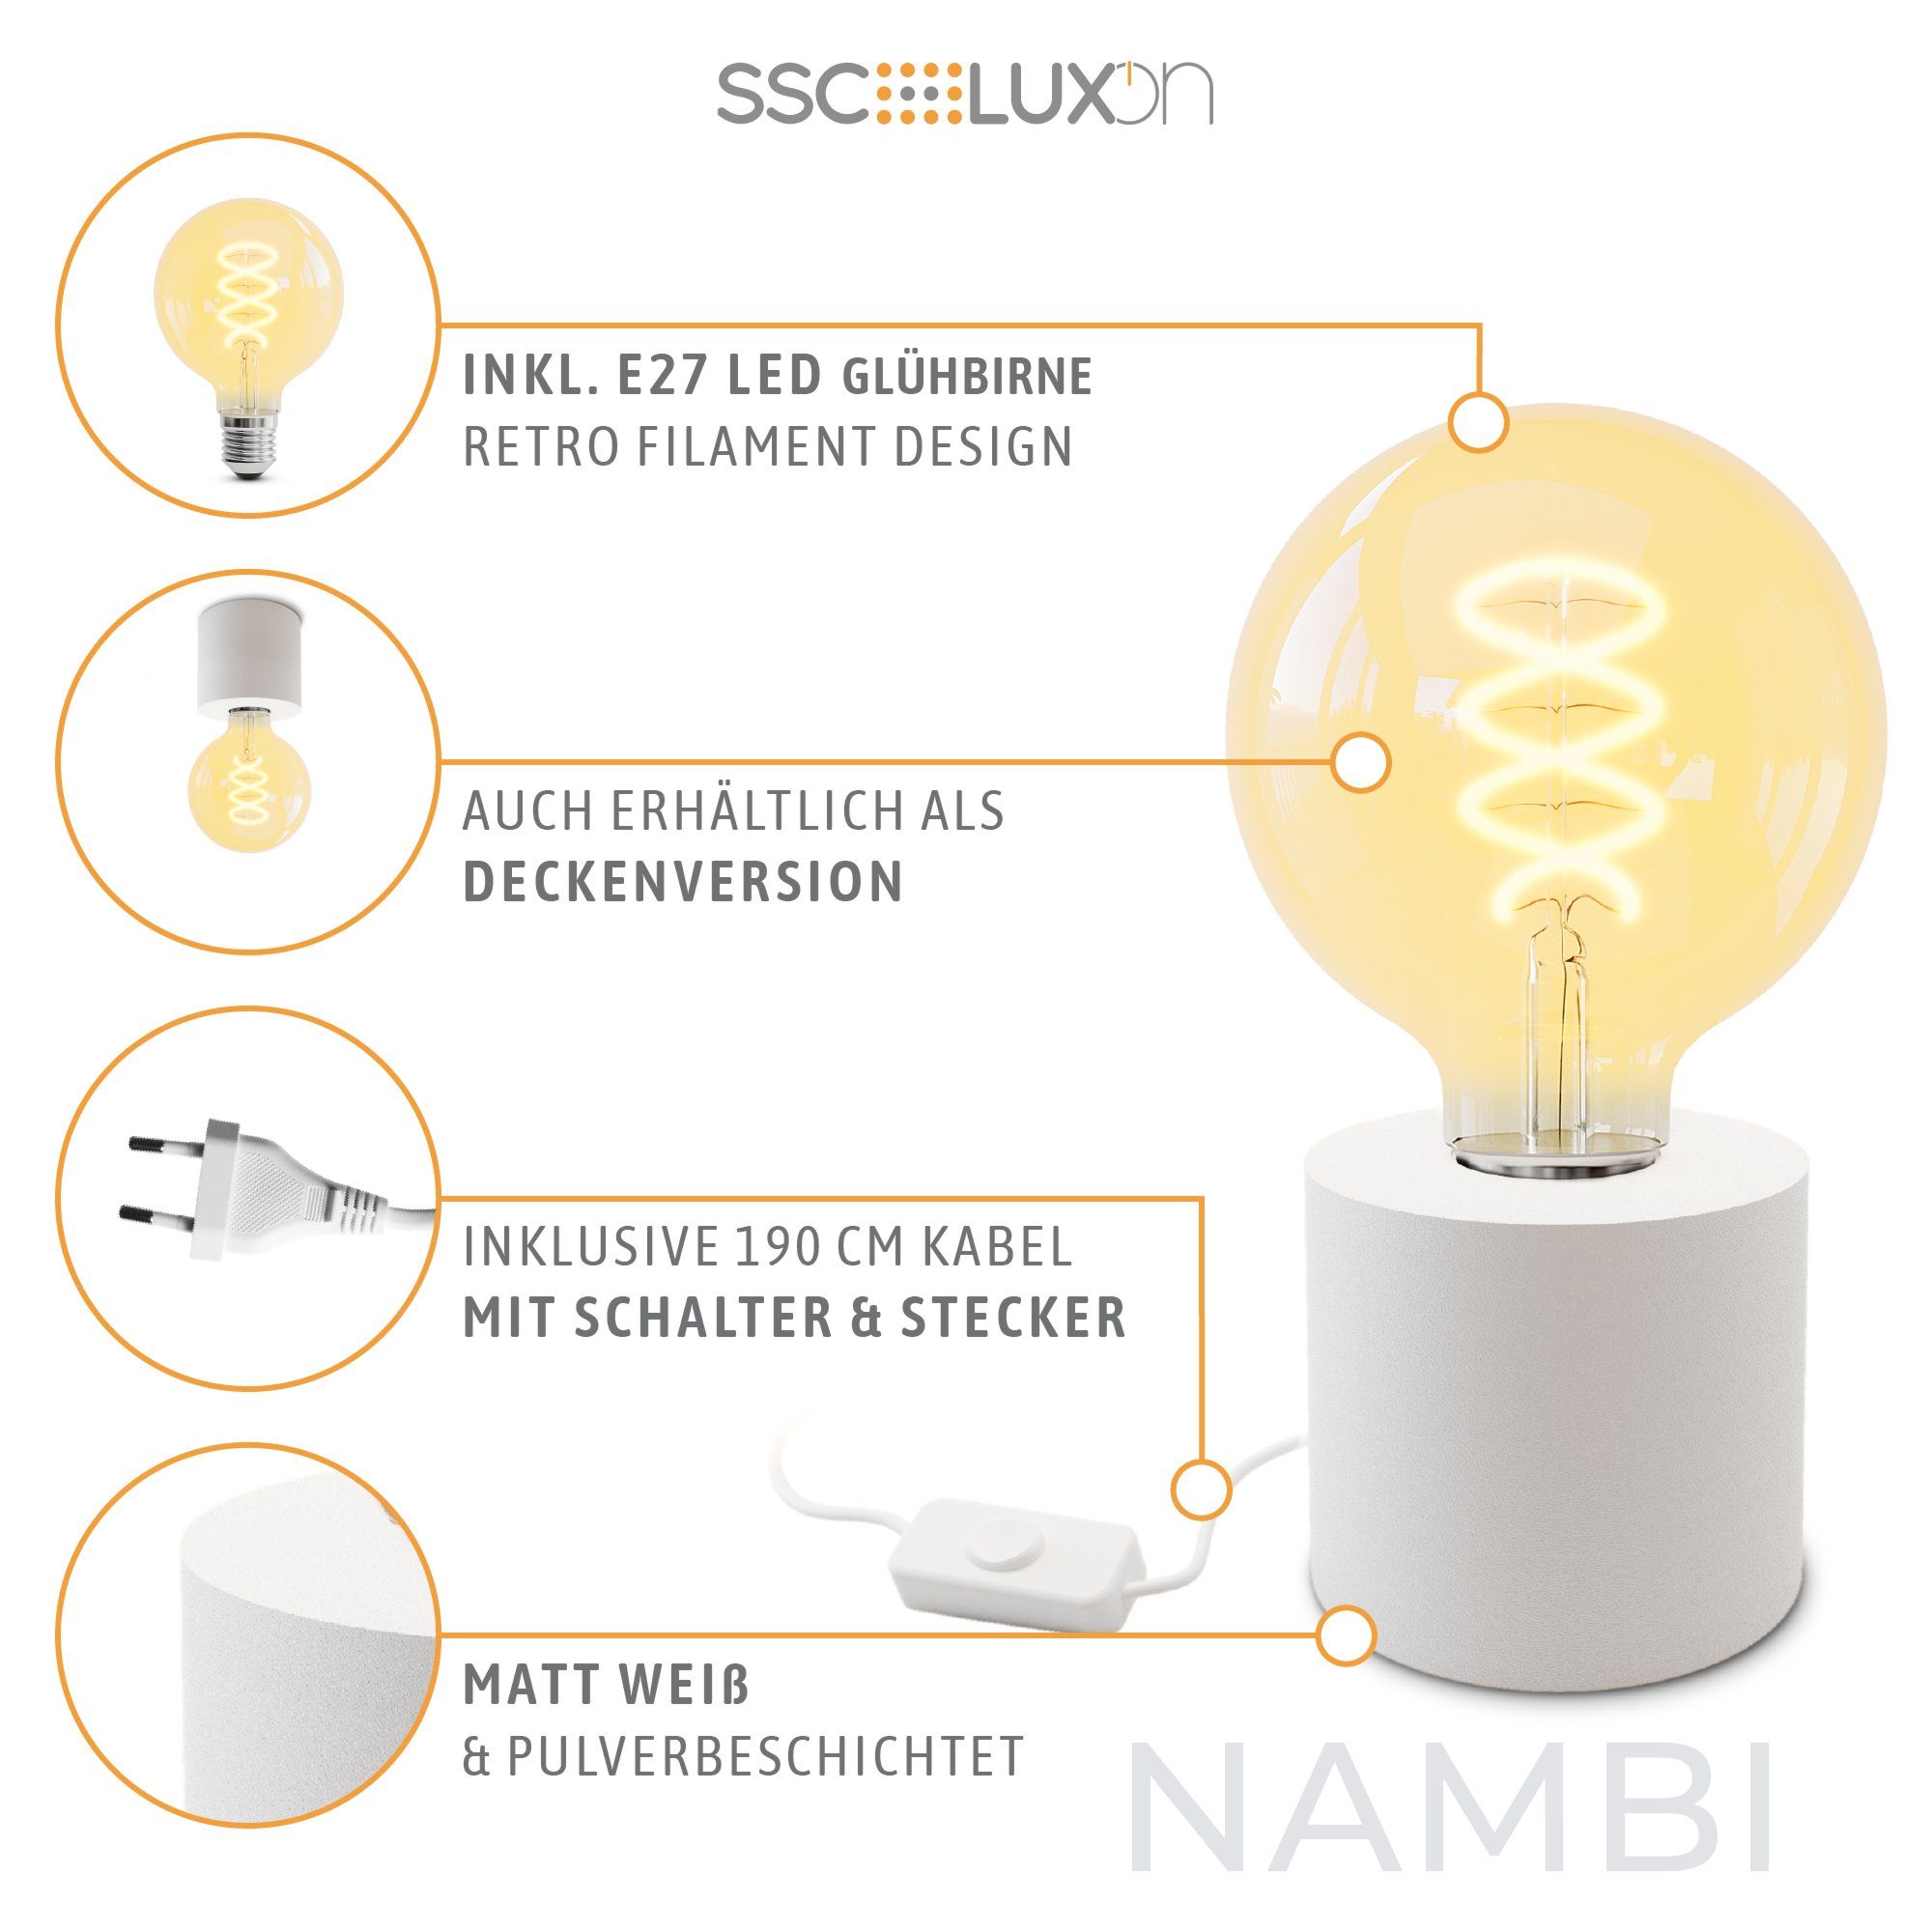 Steckerkabel mit LED LED weiss Tischlampe SSC-LUXon mit & Extra Globe Wand- NAMBI Warmweiß E27, Bilderleuchte